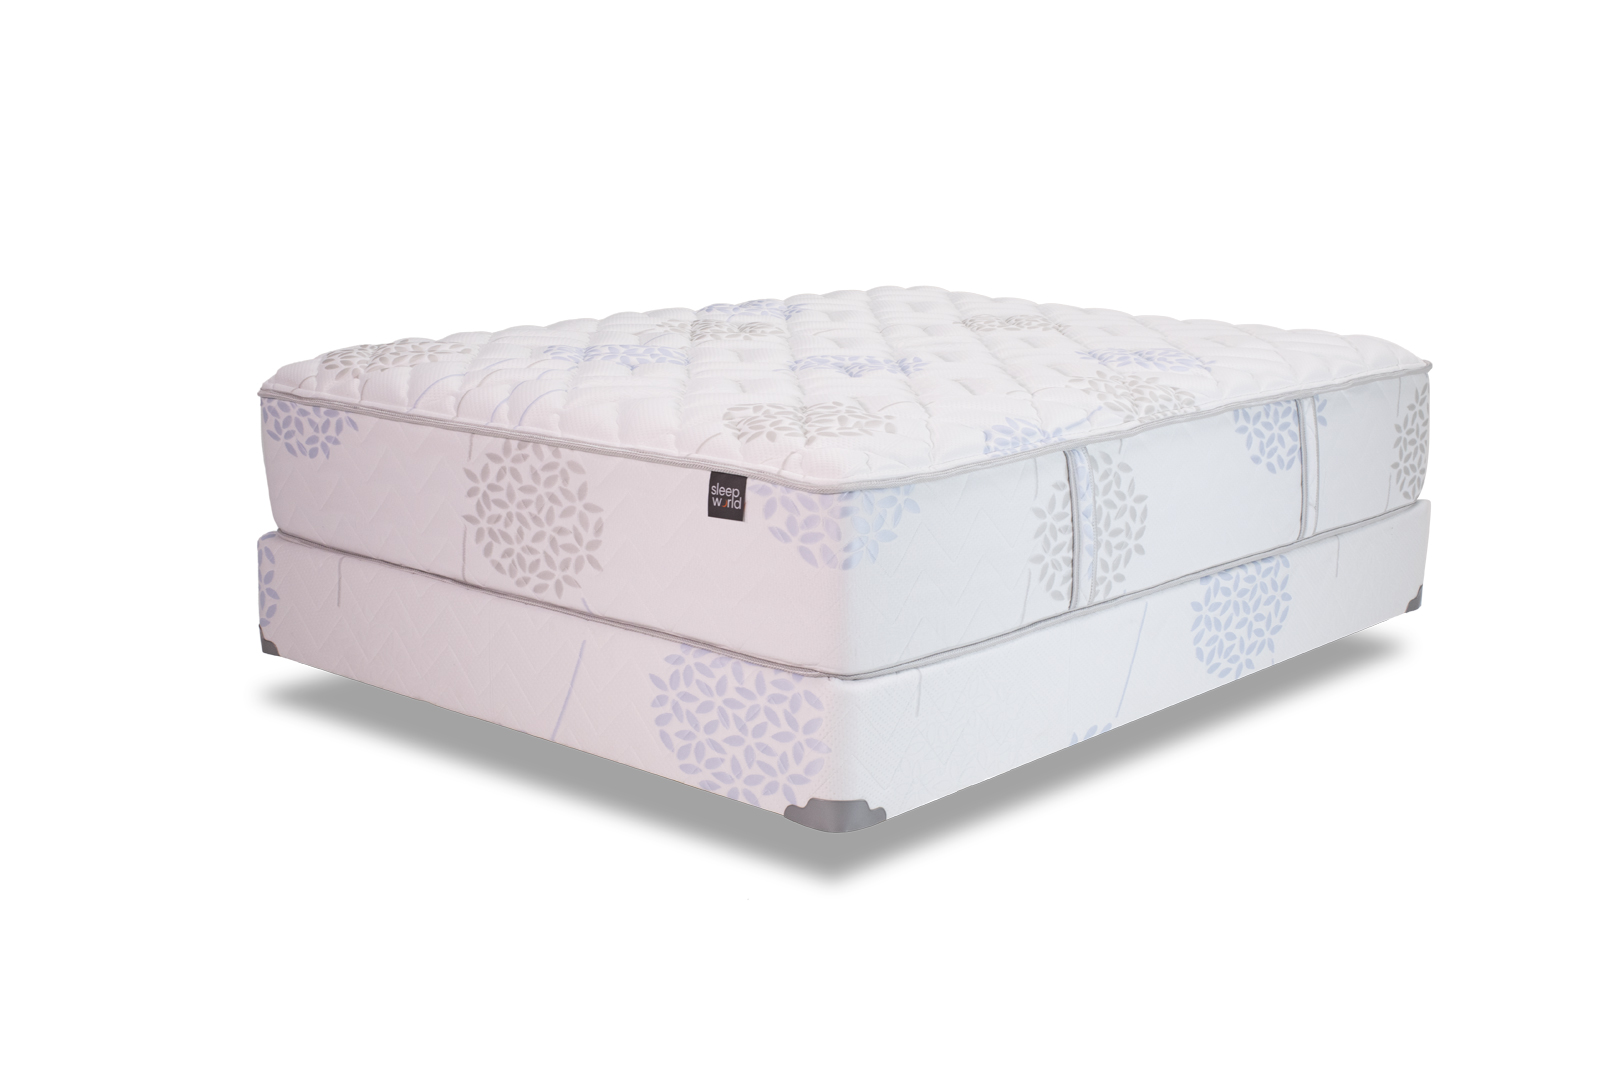 sleepworld mattress store reviews